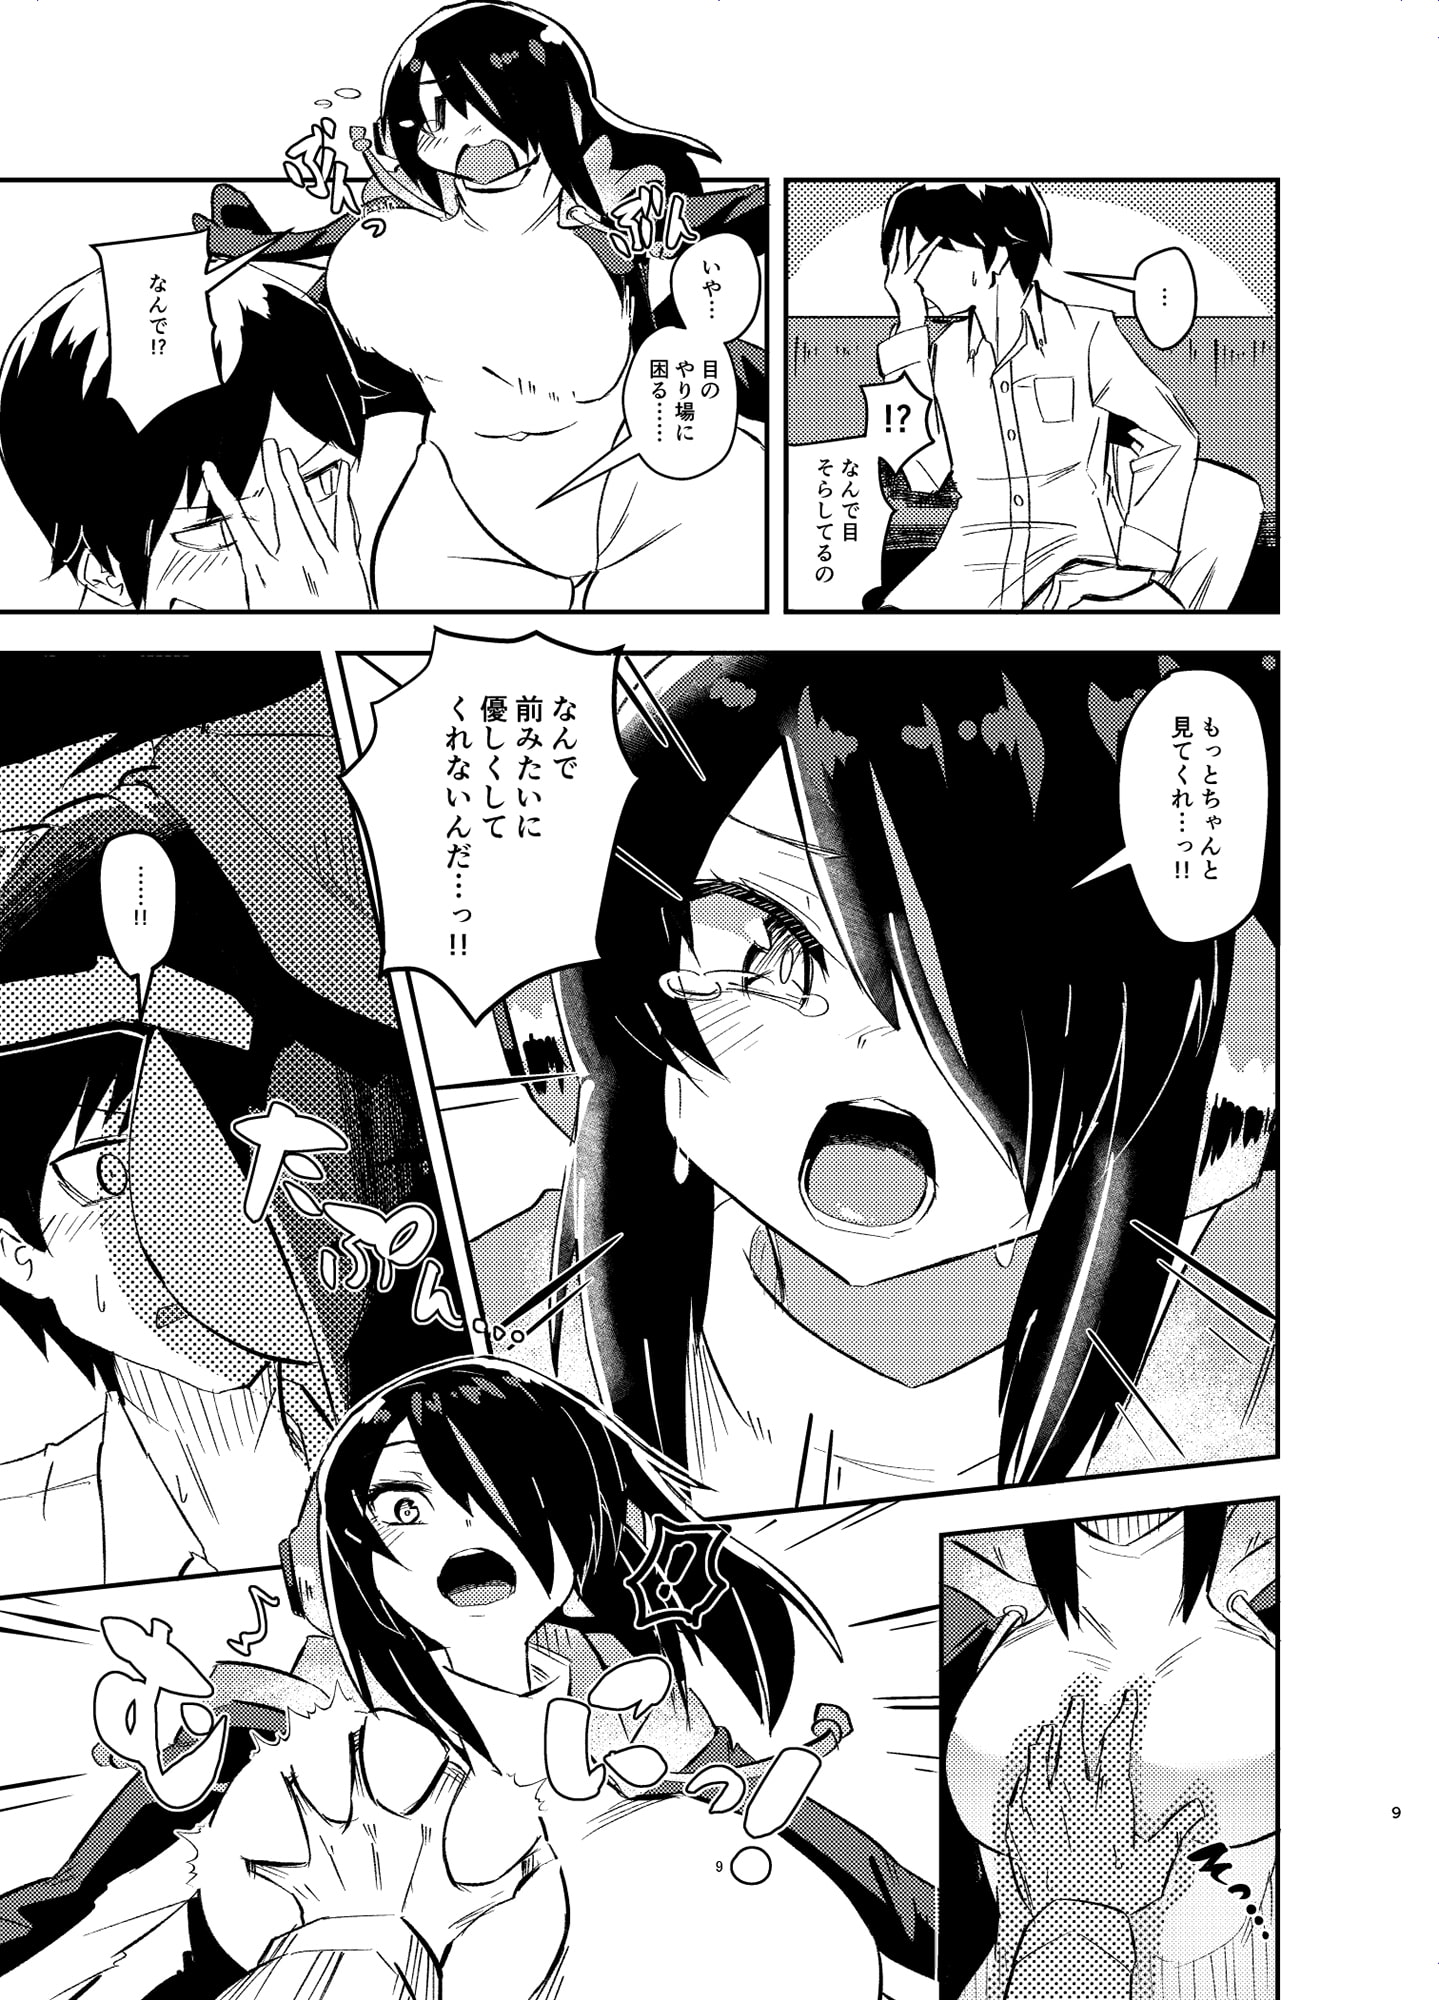 Koutei-chan wants affection